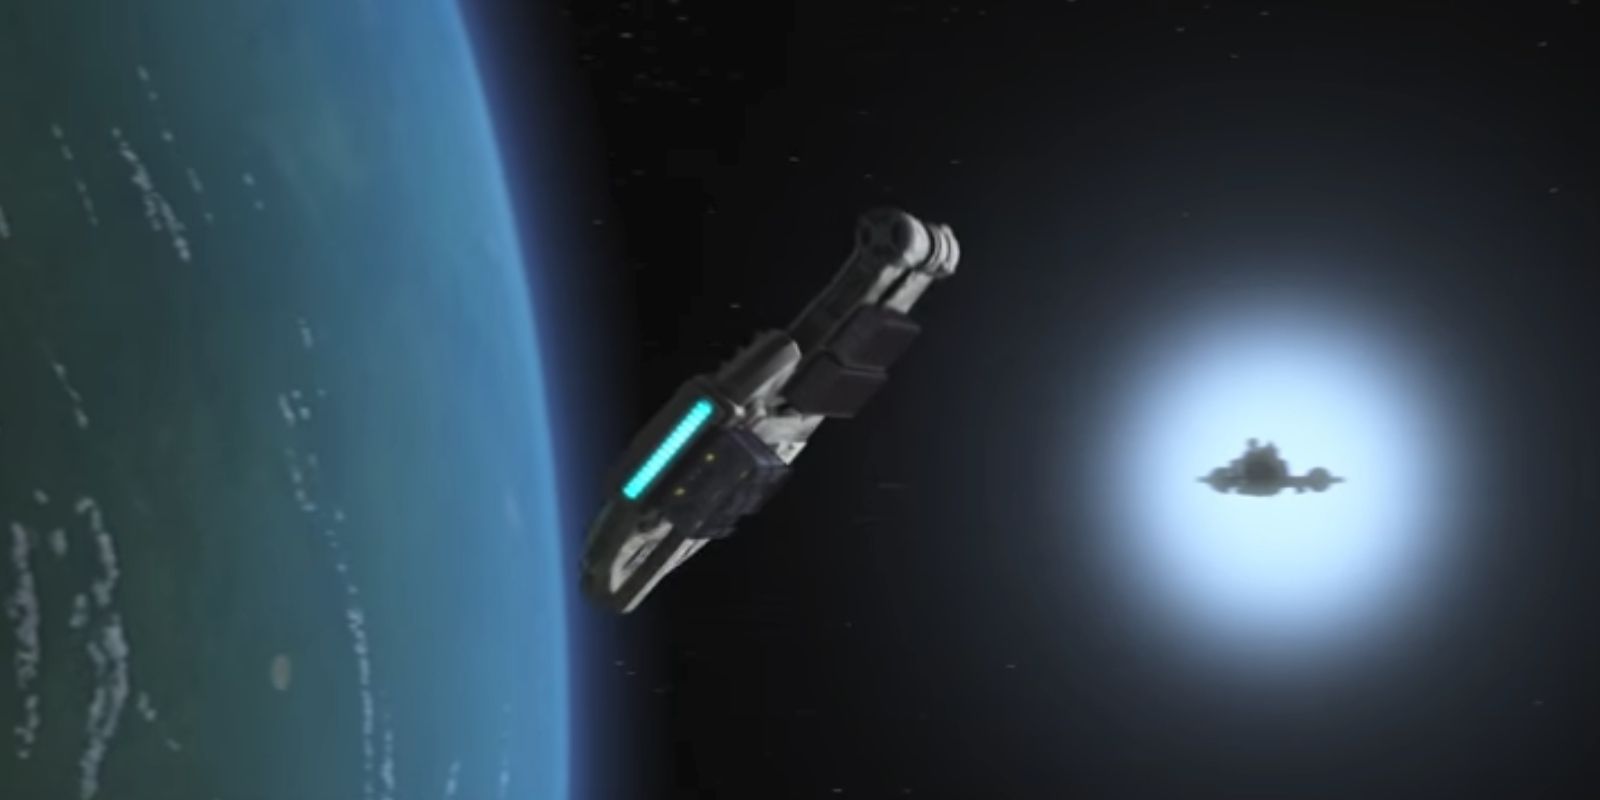 Sebuah kapal melingkar, sedikit asimetris mengelilingi planet biru saat kapal Kekaisaran mendekat dari kejauhan di Star Wars Rebels.